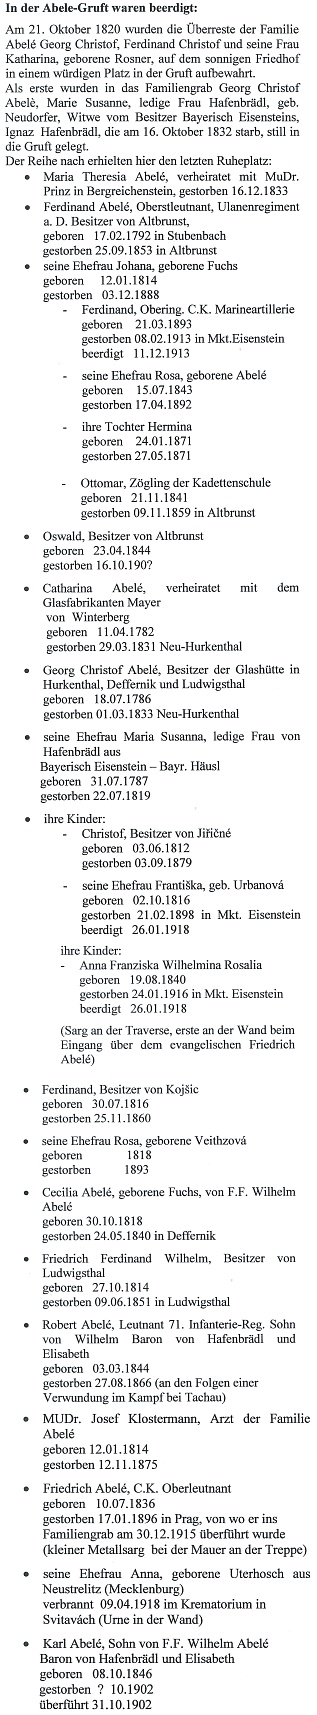 Seznam osob, pohřbených v rodové hrobce Abeleových v Hůrce, otištěný v knize Mythos Heimat : Böhmerwaldfahrt nach Hurkenthal / Hurka (2008), vydané nakladatelstvím Ohetaler-Verlag Riedlhütte (ed. Christa a Willi Stegerovi